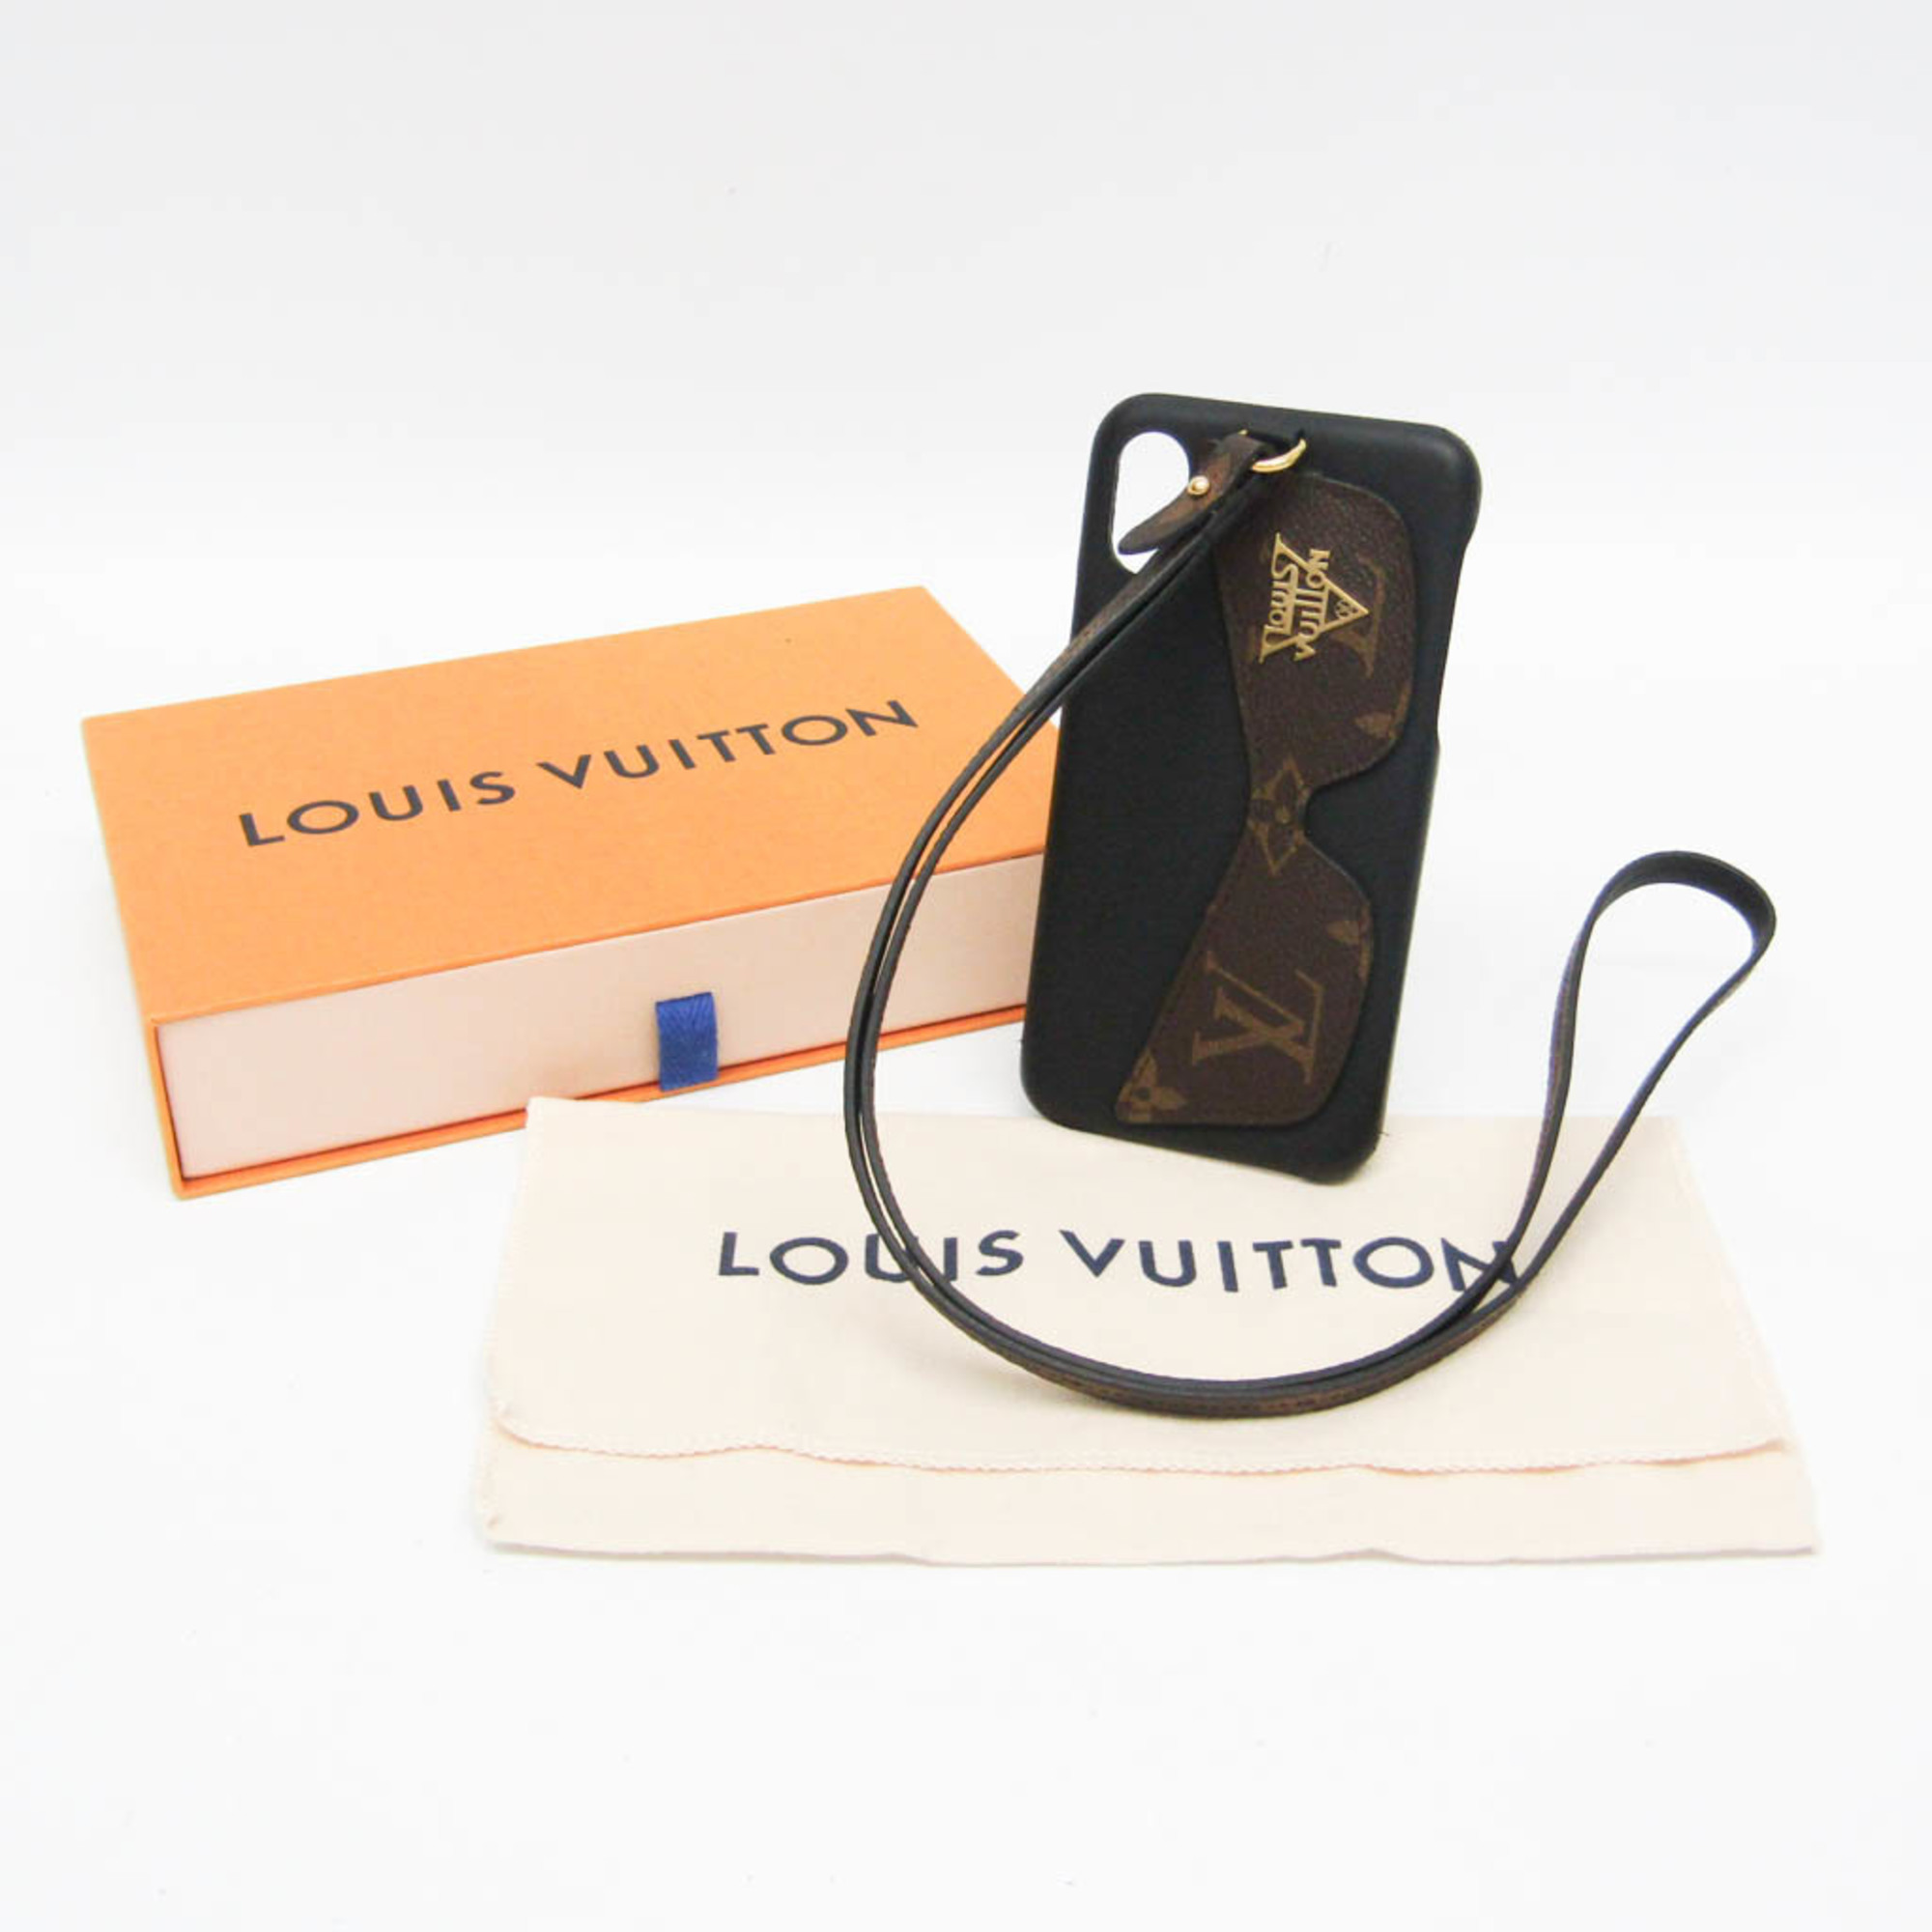 ルイ・ヴィトン(Louis Vuitton) モノグラム キャッツアイ サングラス M68793 モノグラム バンパー iPhone X 対応 モノグラム,ノワール